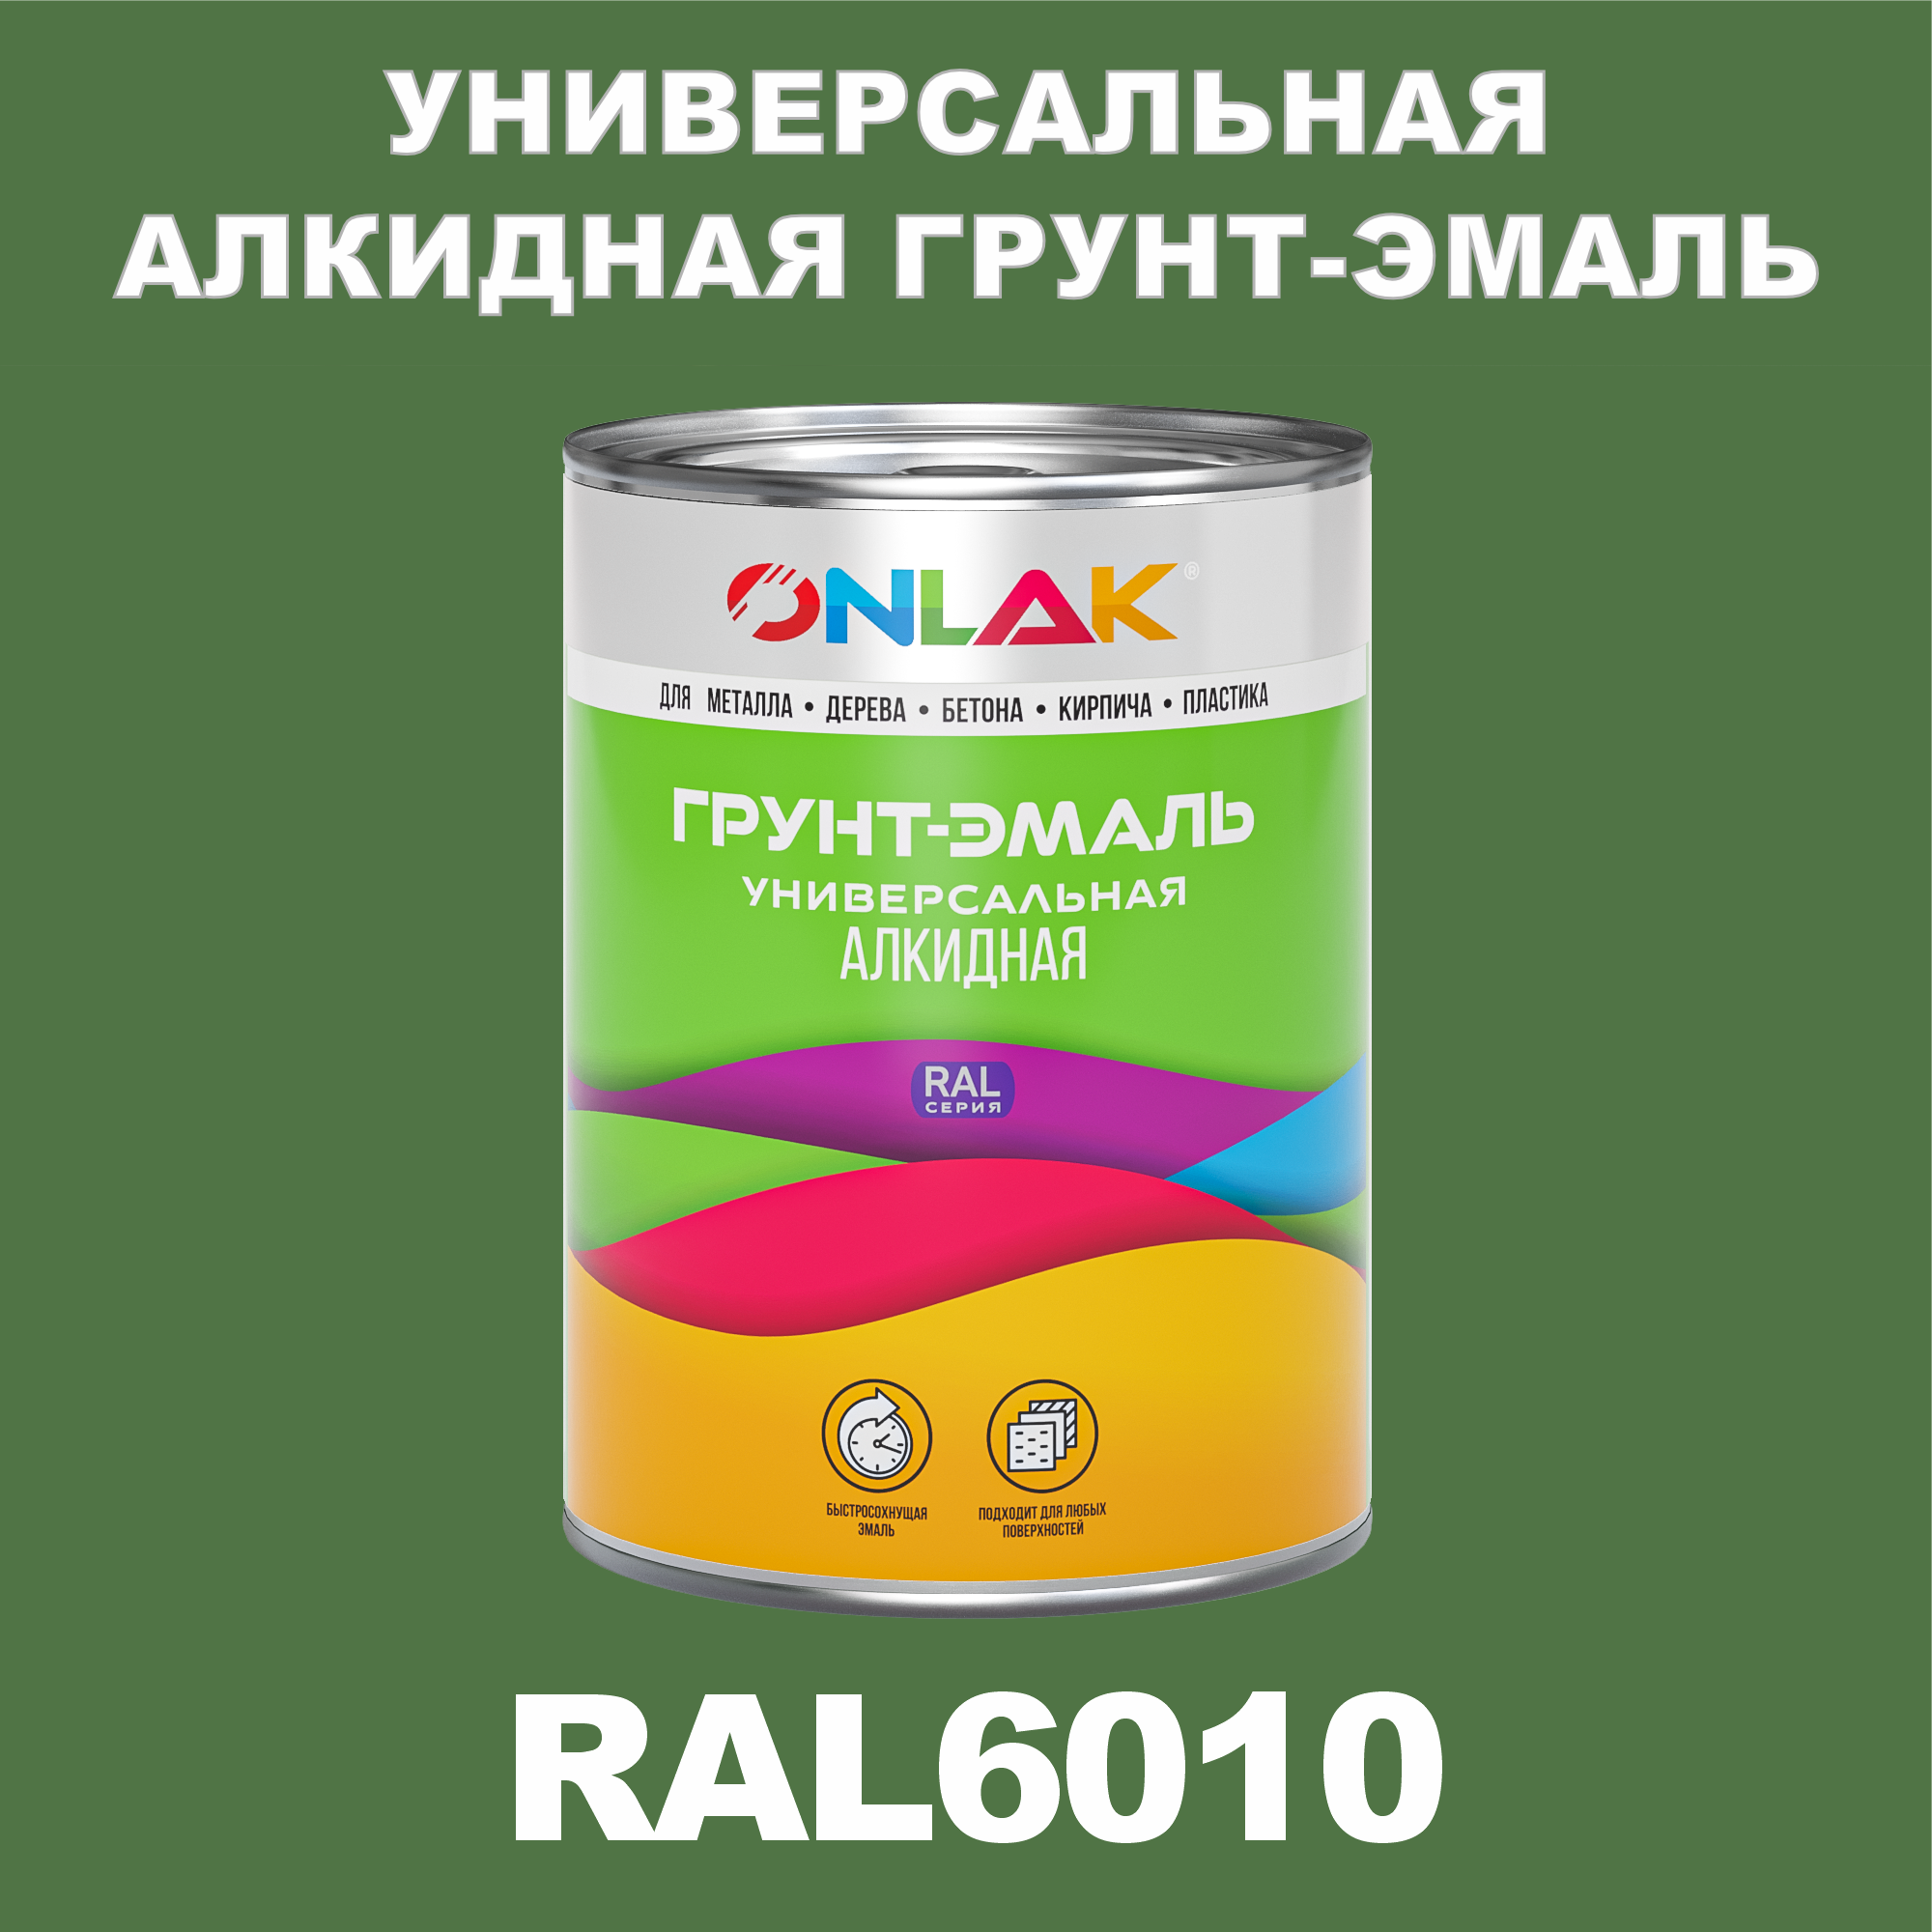 Грунт-эмаль ONLAK 1К RAL6010 антикоррозионная алкидная по металлу по ржавчине 1 кг